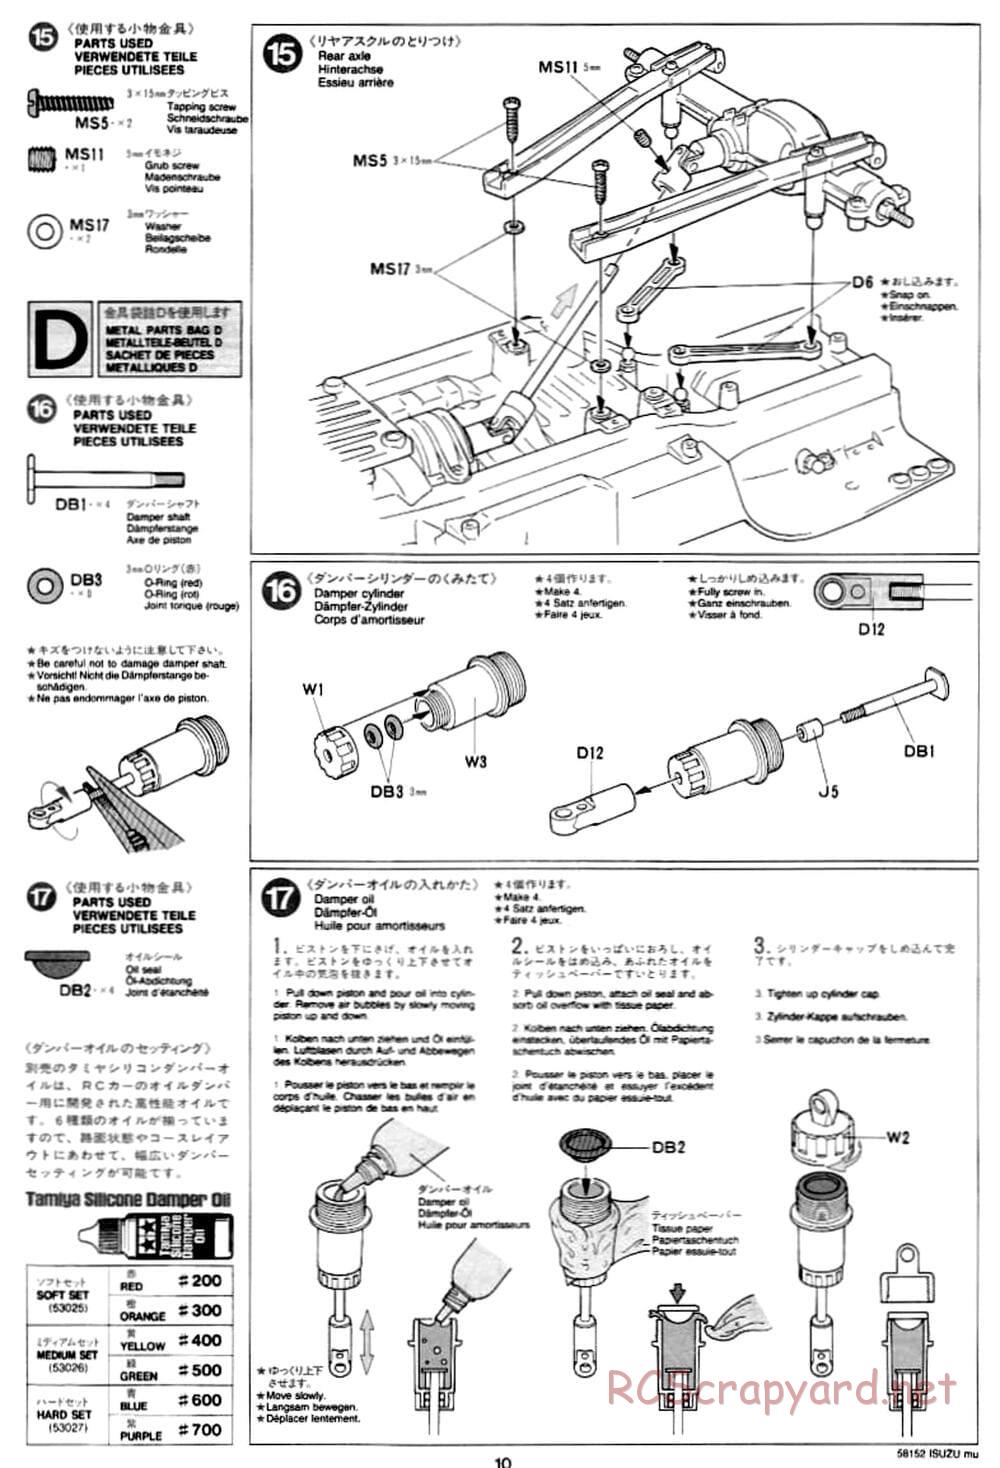 Tamiya - Isuzu Mu - CC-01 Chassis - Manual - Page 10